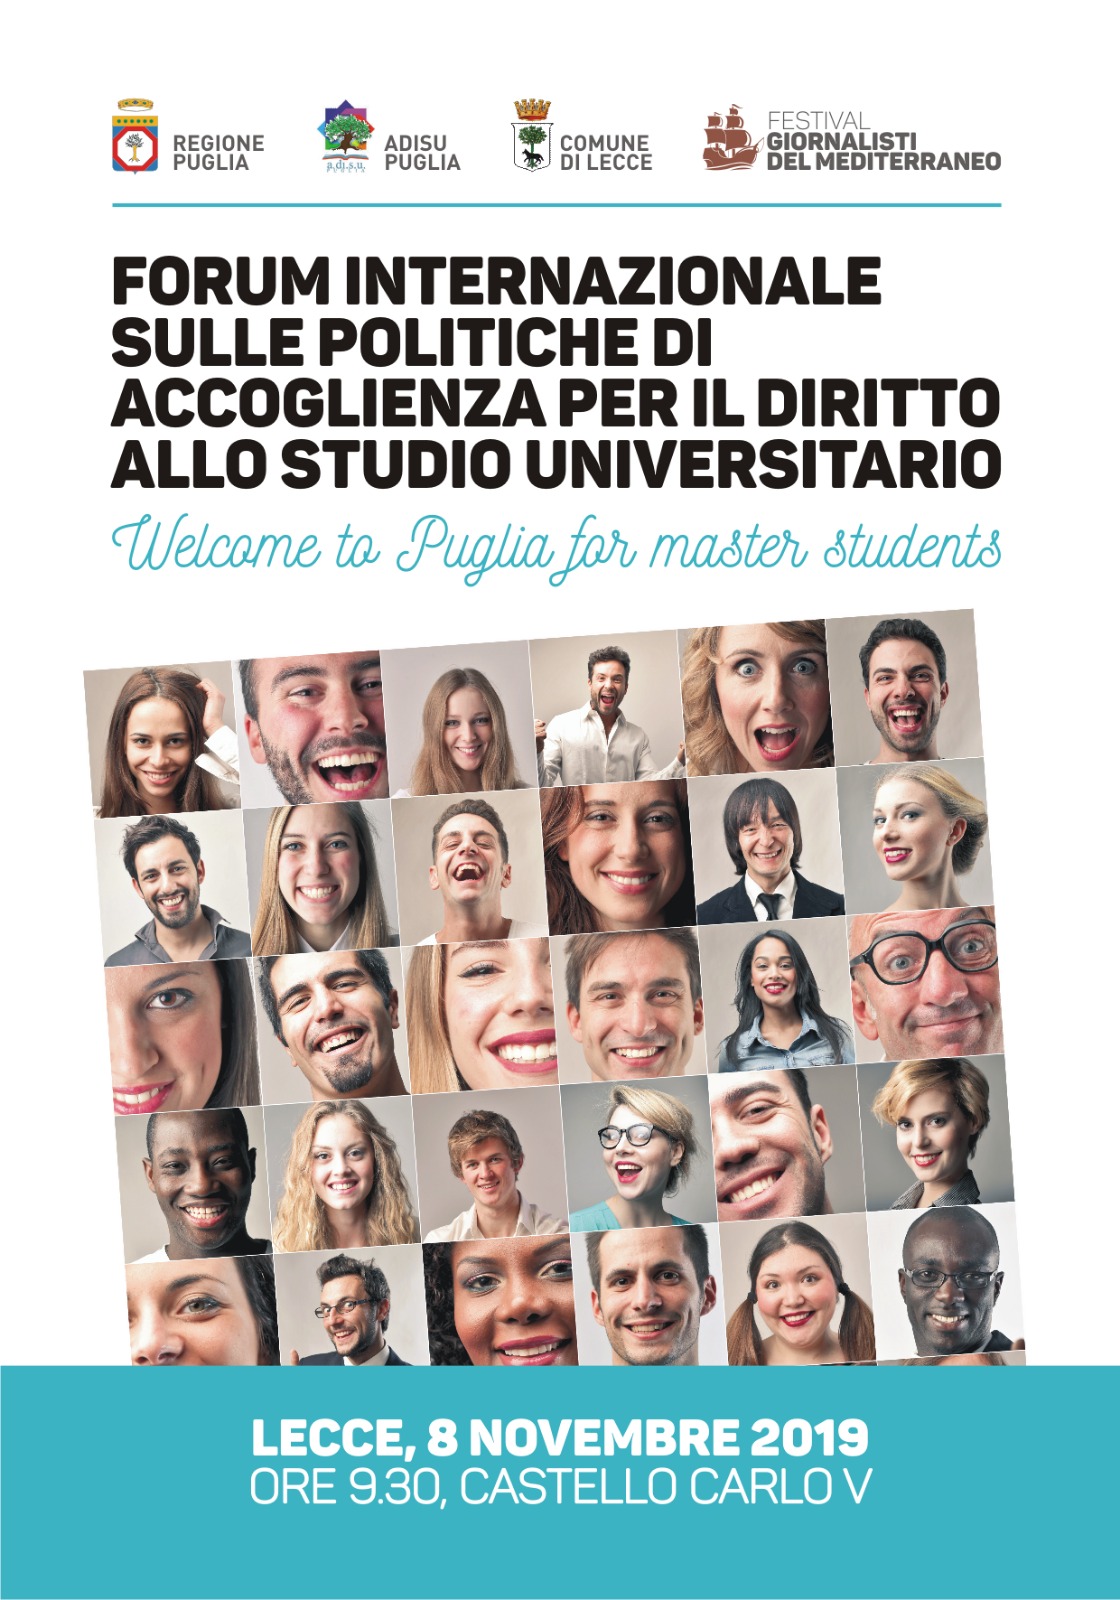 Forum internazionale sulle politiche di accoglienza per il diritto allo studio universitario